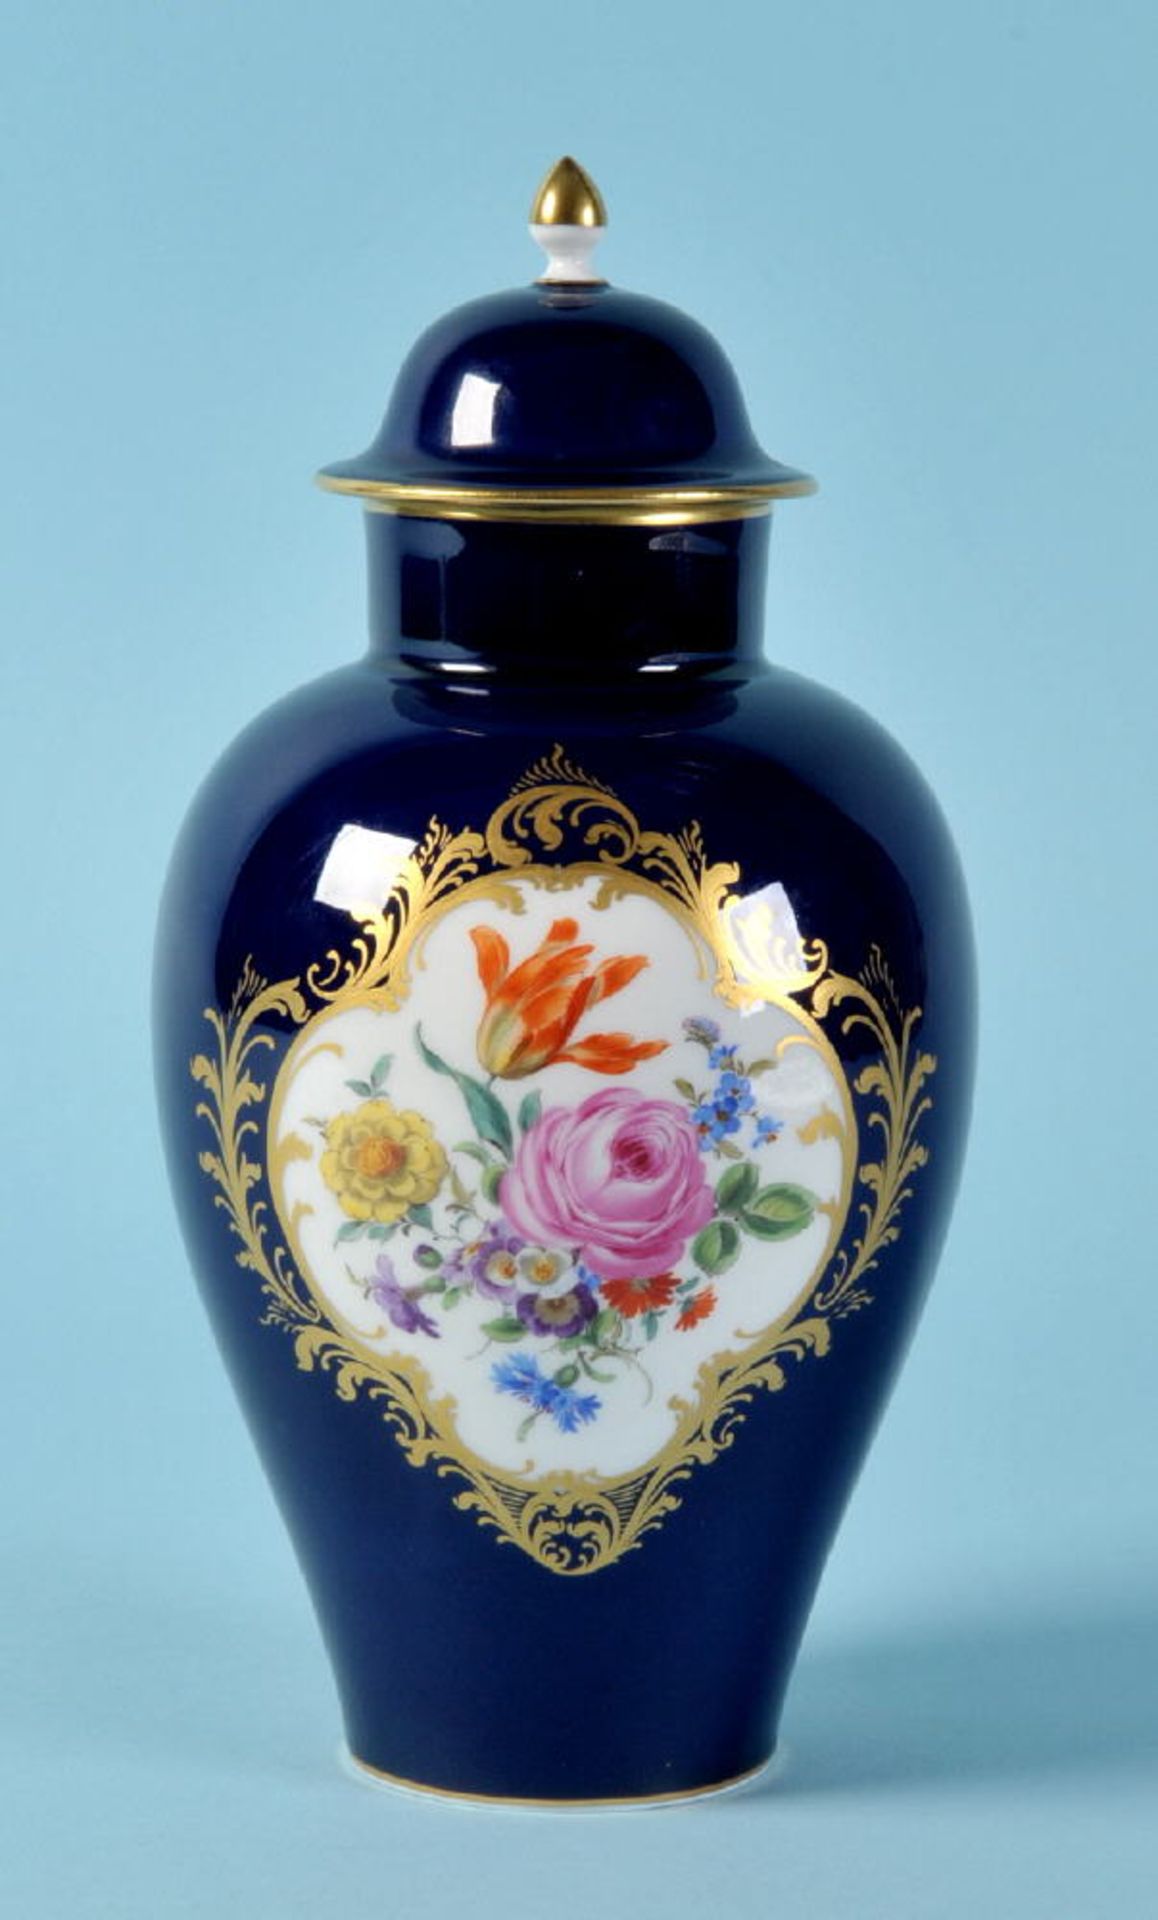 Deckelvase "Schwerter Meissen"Porzellan, handbemalt, königsblaue Glasur, 1 Kartusche mit Blumen-